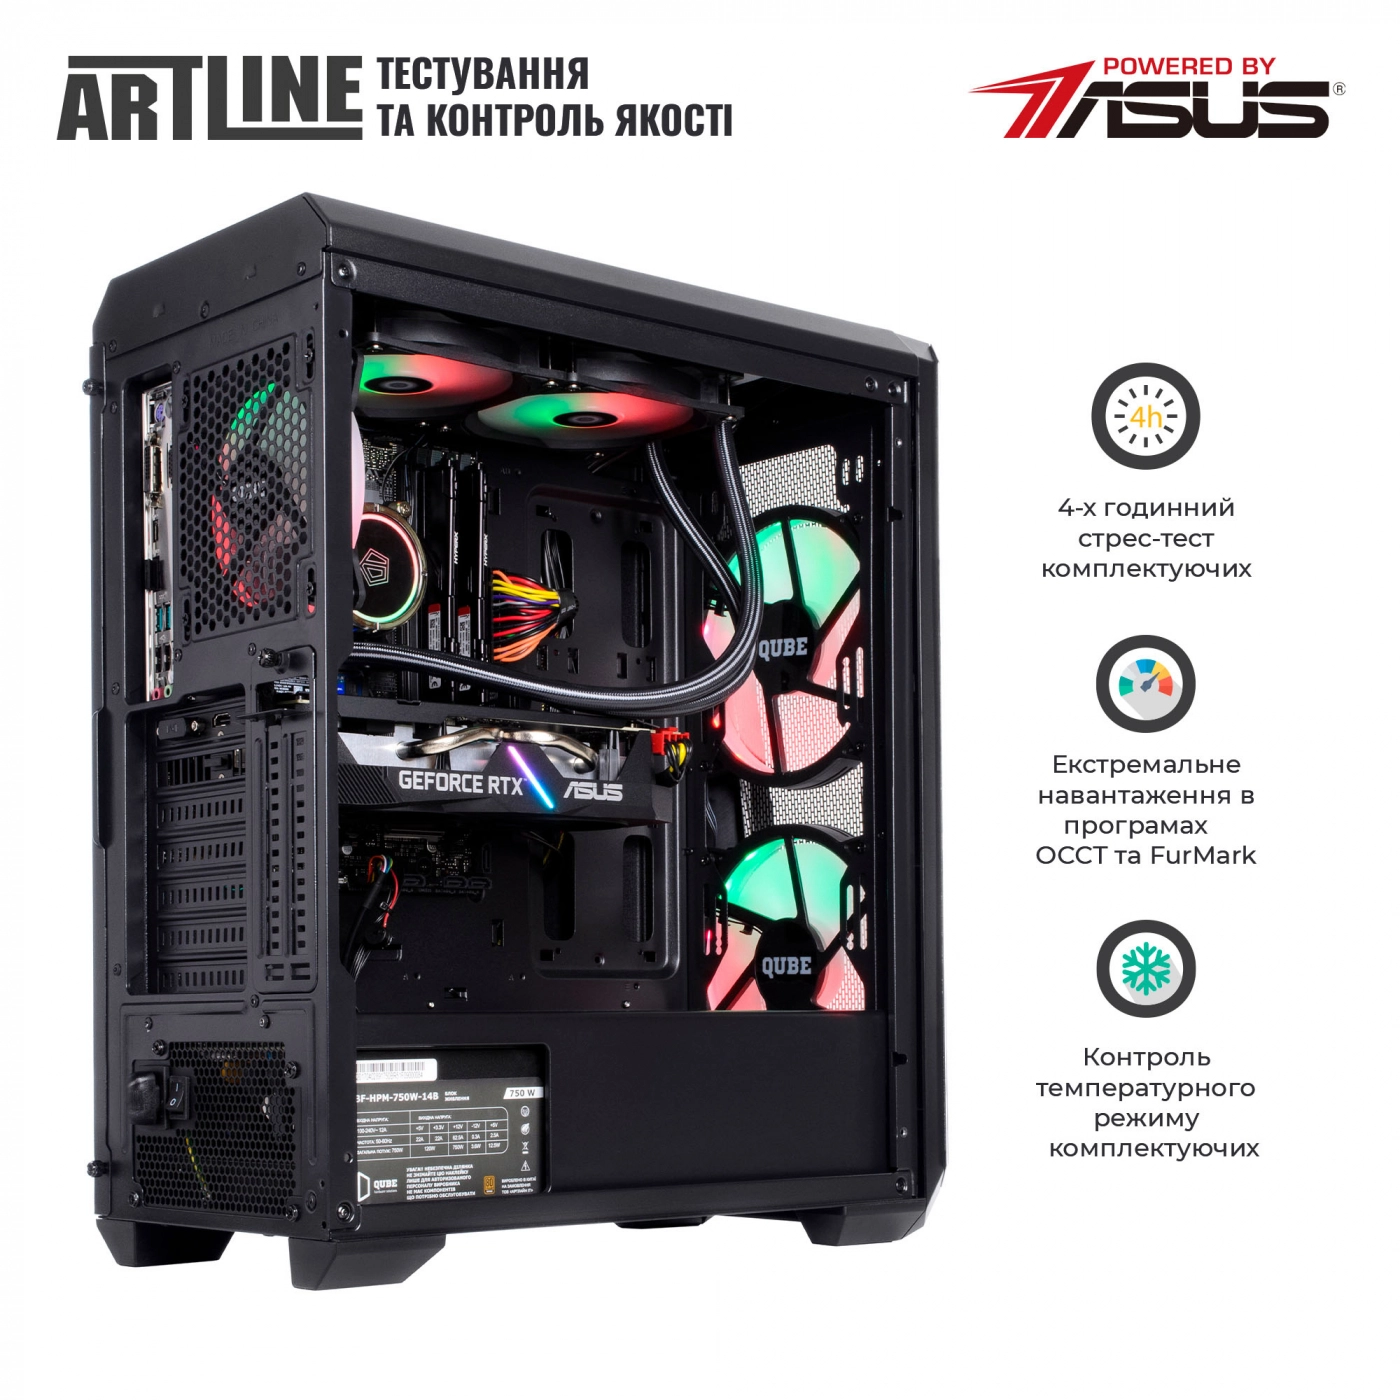 Купить Компьютер ARTLINE Gaming X87v28 - фото 7